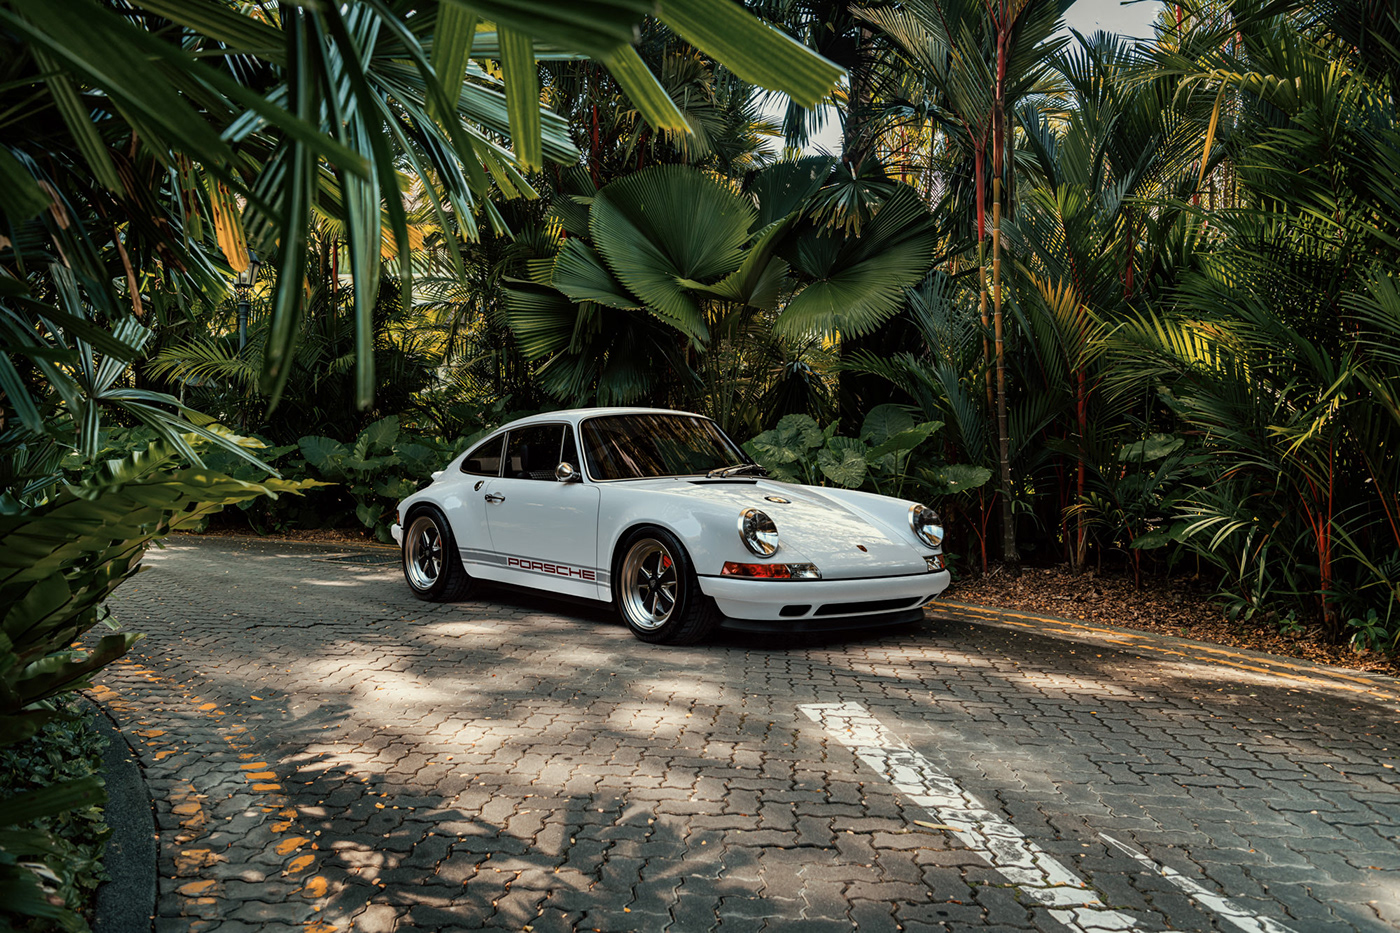 CGI photographer Porsche Porsche 911 shanghai singapore